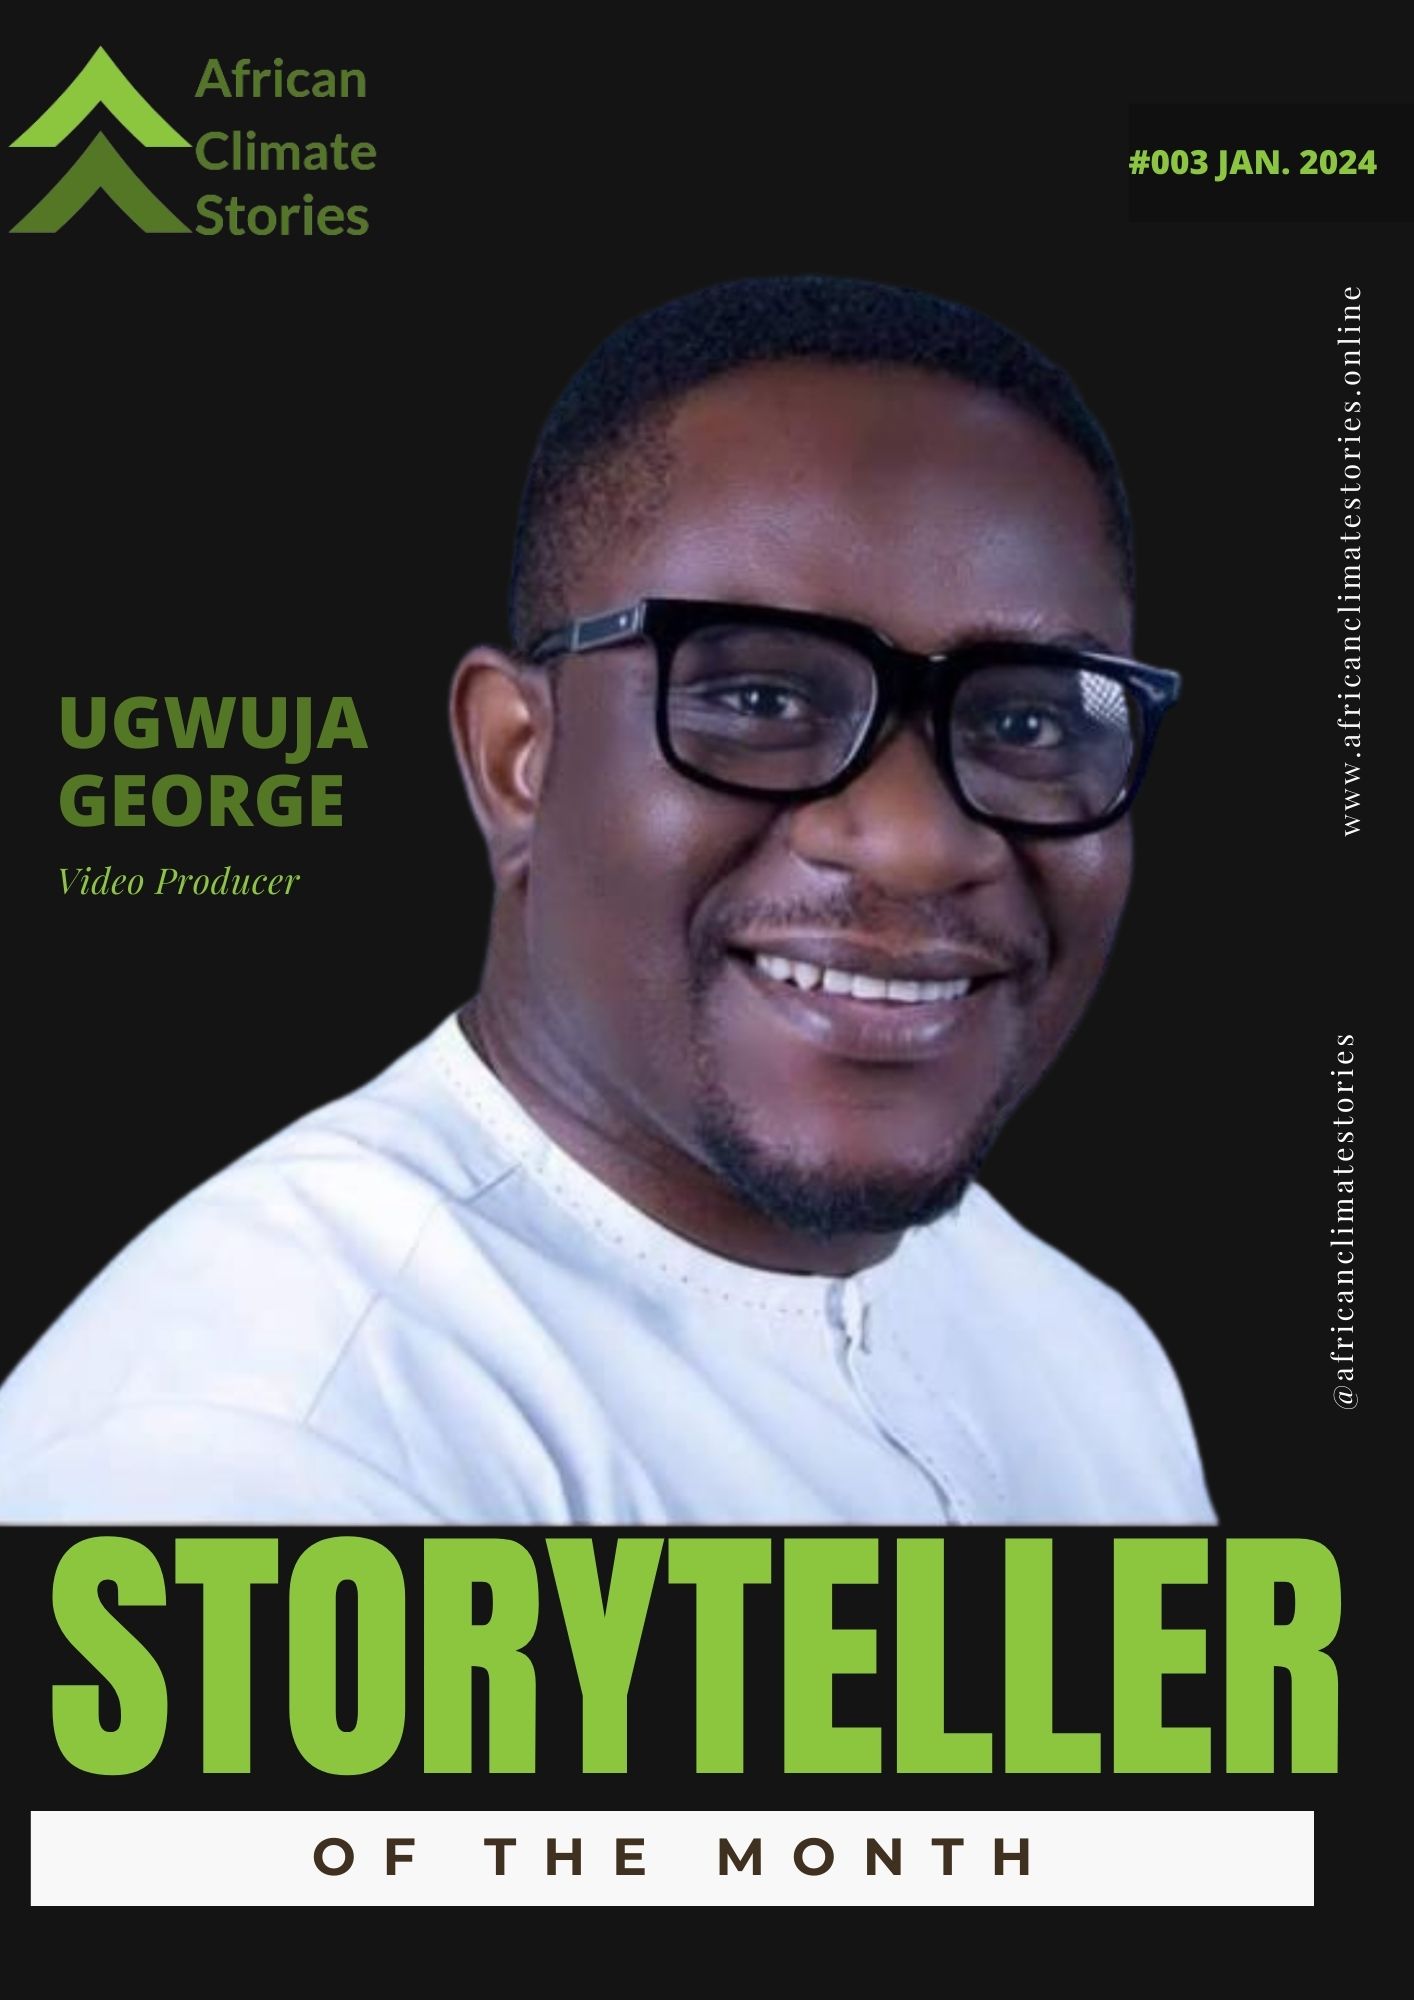 Ugwuja George - African Climate Stories